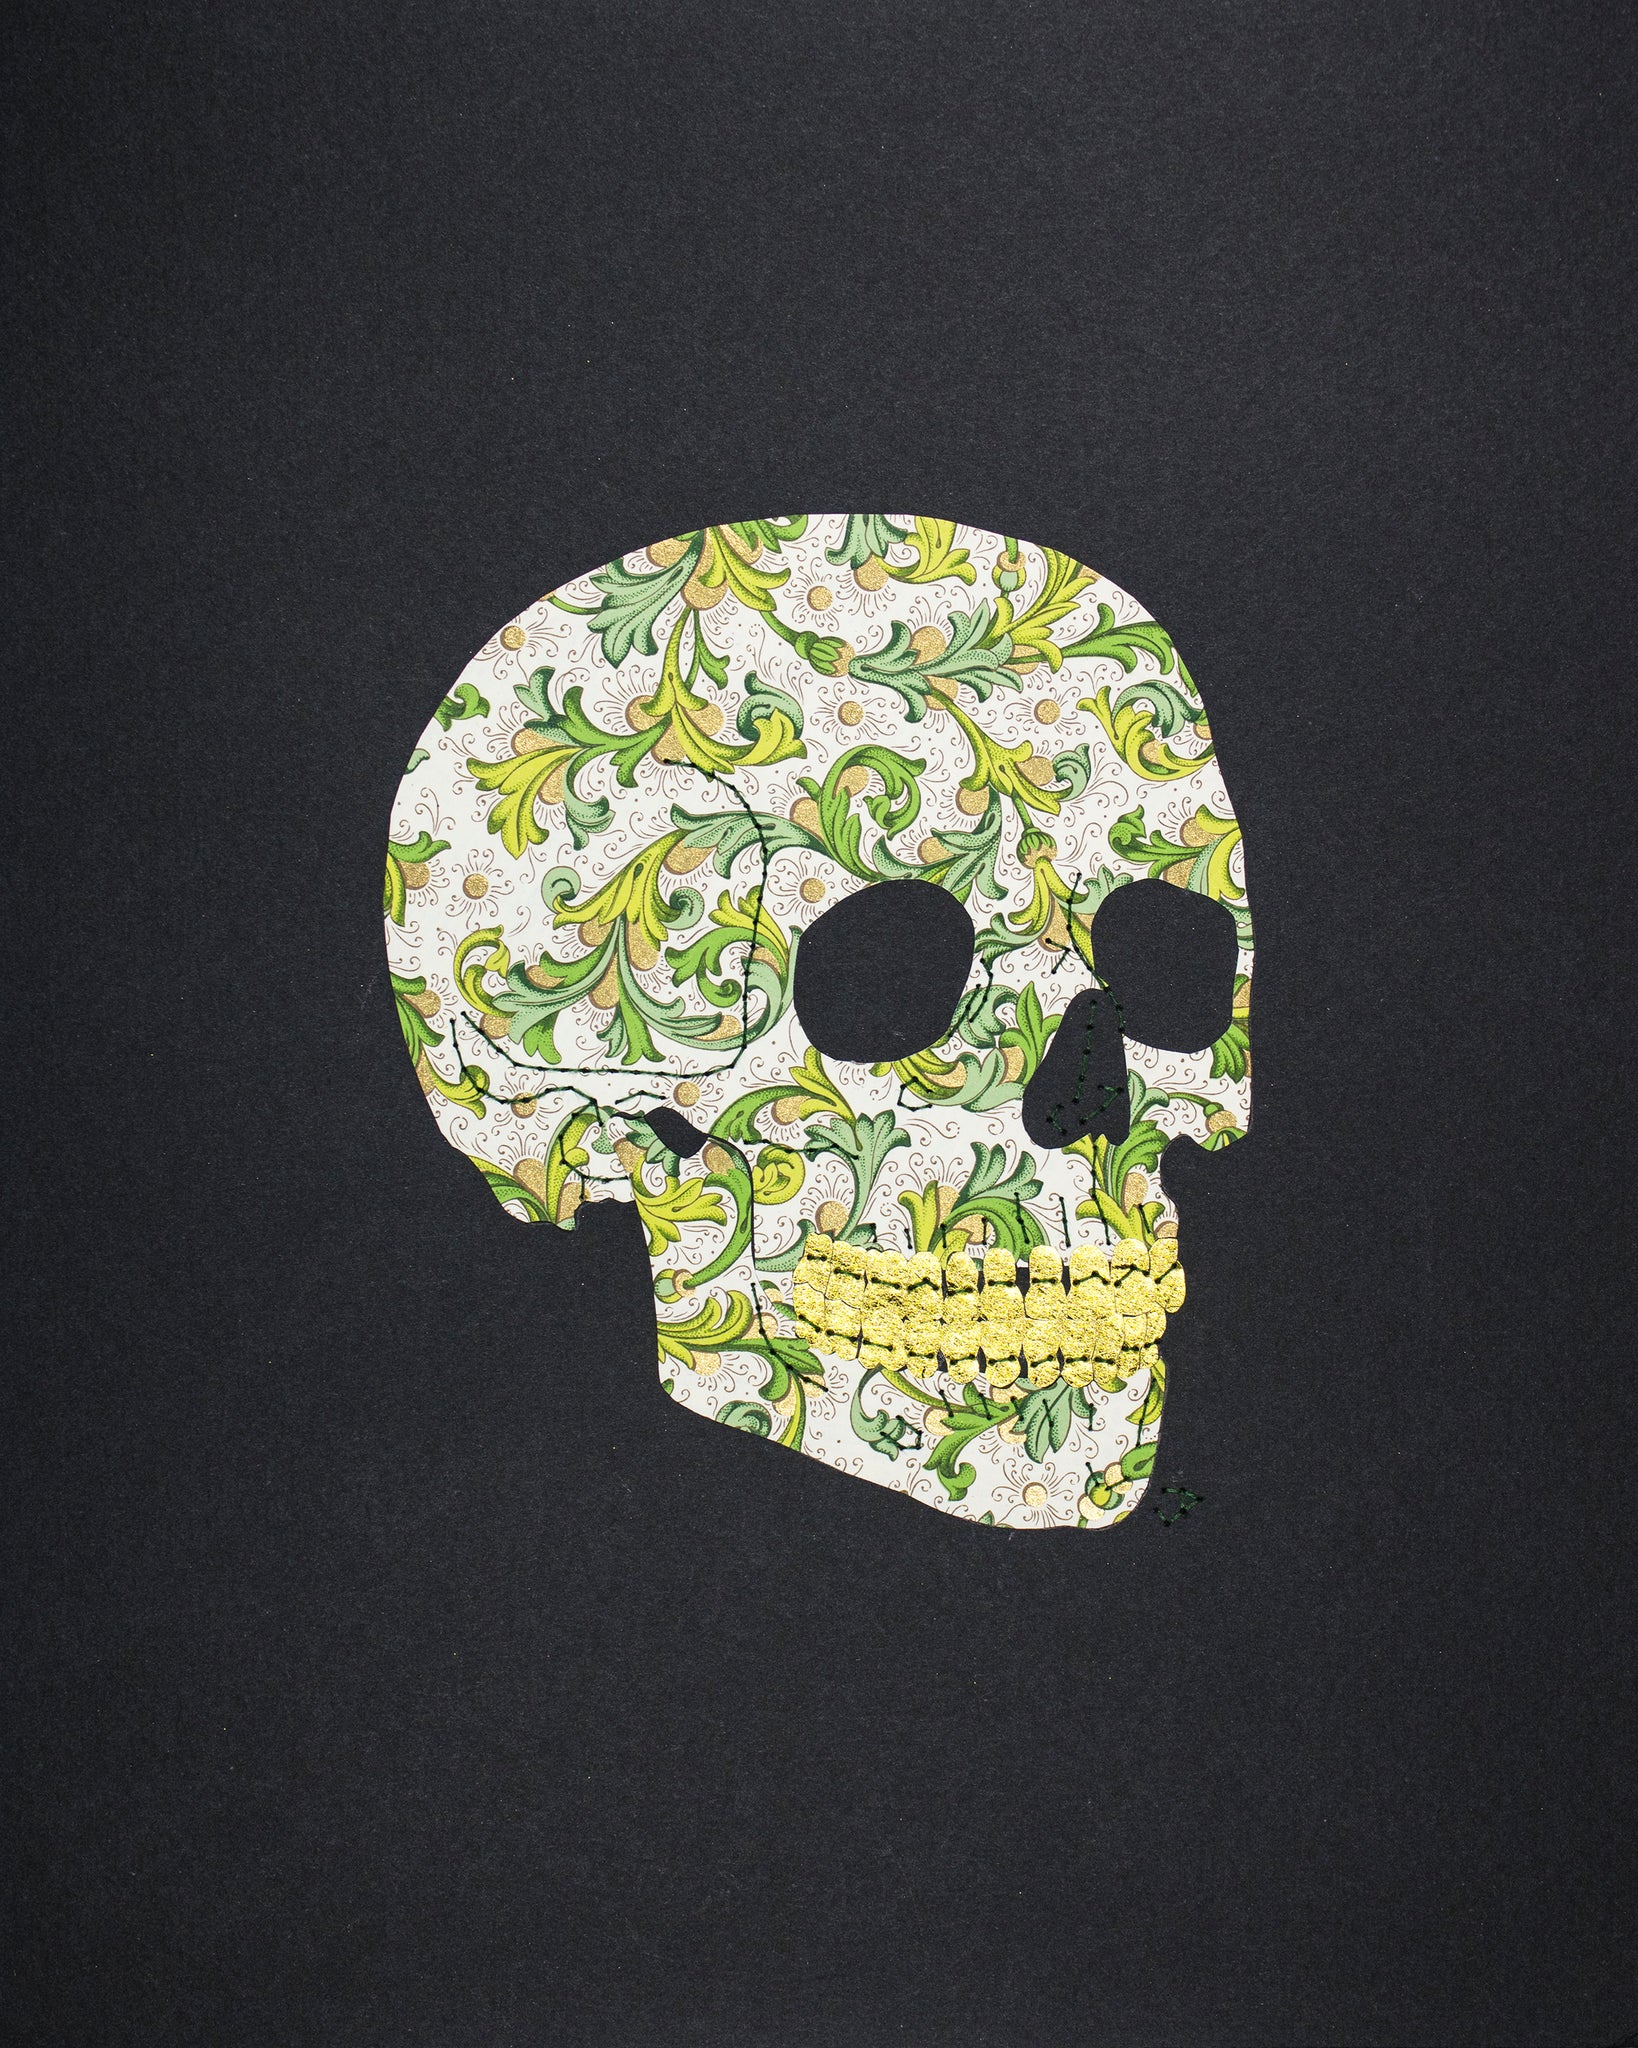 Skull in green & gold Italian filigree